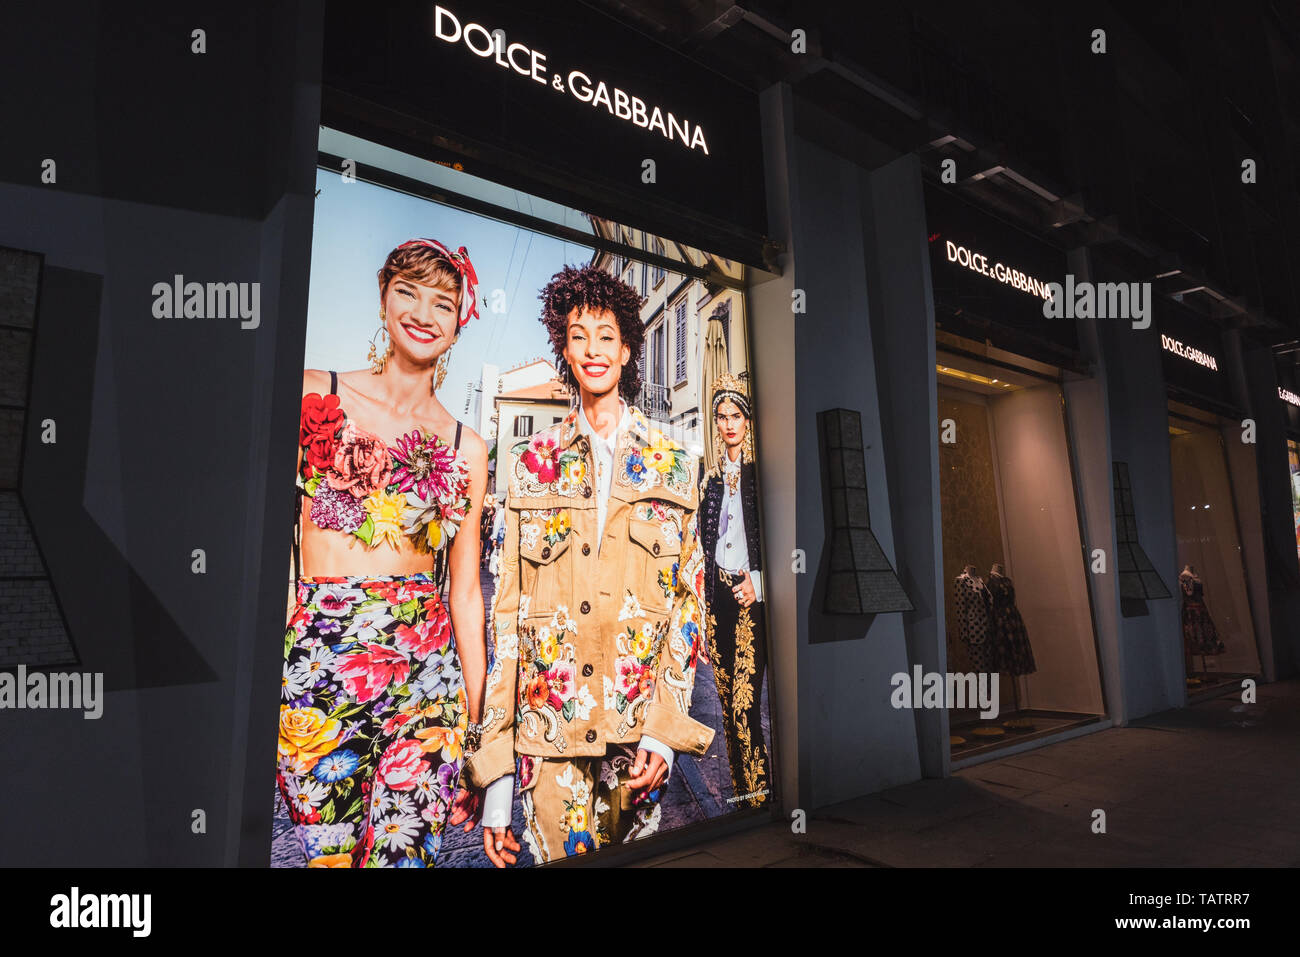 Ho Chi Minh Ville, Vietnam - le 23 avril 2019 : Dolce & Gabbana shop du revêtement extérieur de nuit, vitres avant avec des vêtements et une affiche montrant les femmes modèles. Banque D'Images